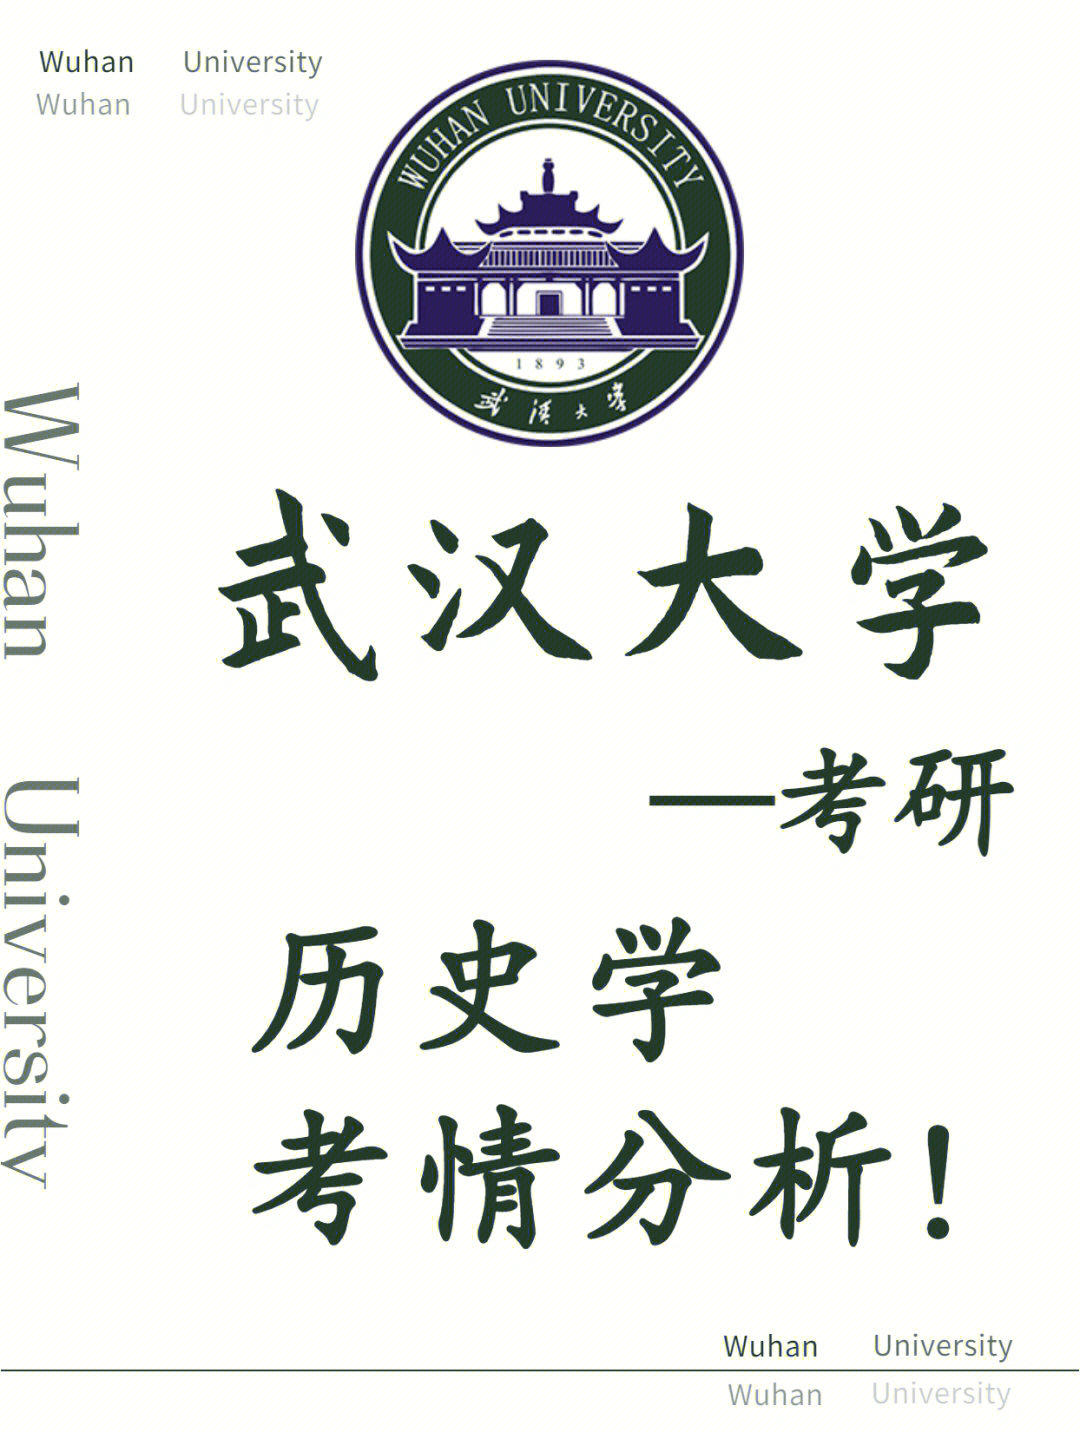 97武汉大学的历史学学科在全国第四轮学科评估,中国史为b ,世界史为